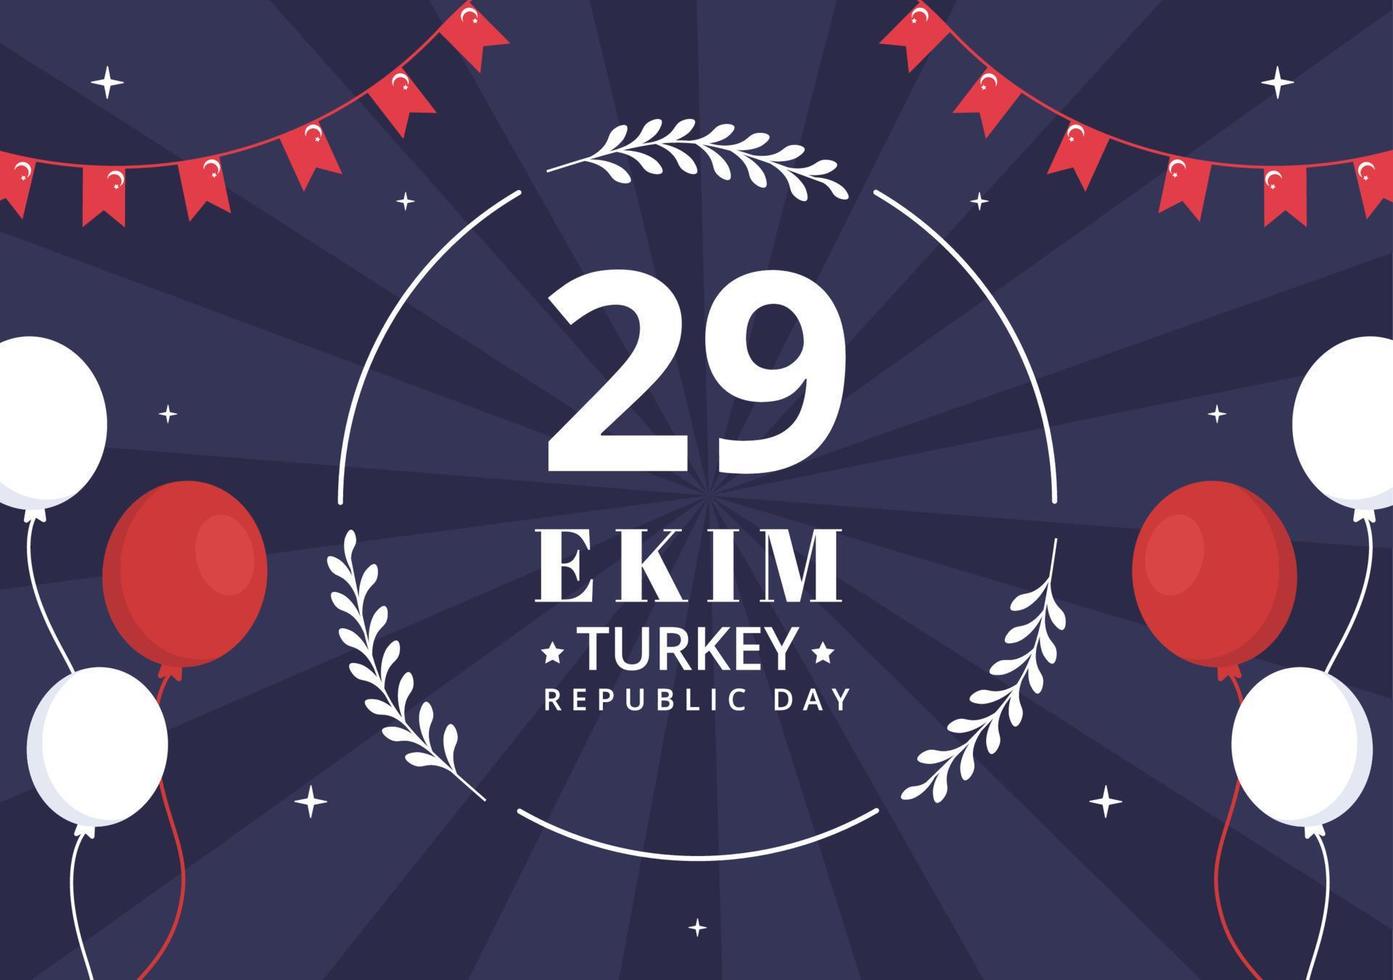 29 ekim turquia modelo de plano de fundo do dia da república ilustração plana dos desenhos animados desenhados à mão vetor